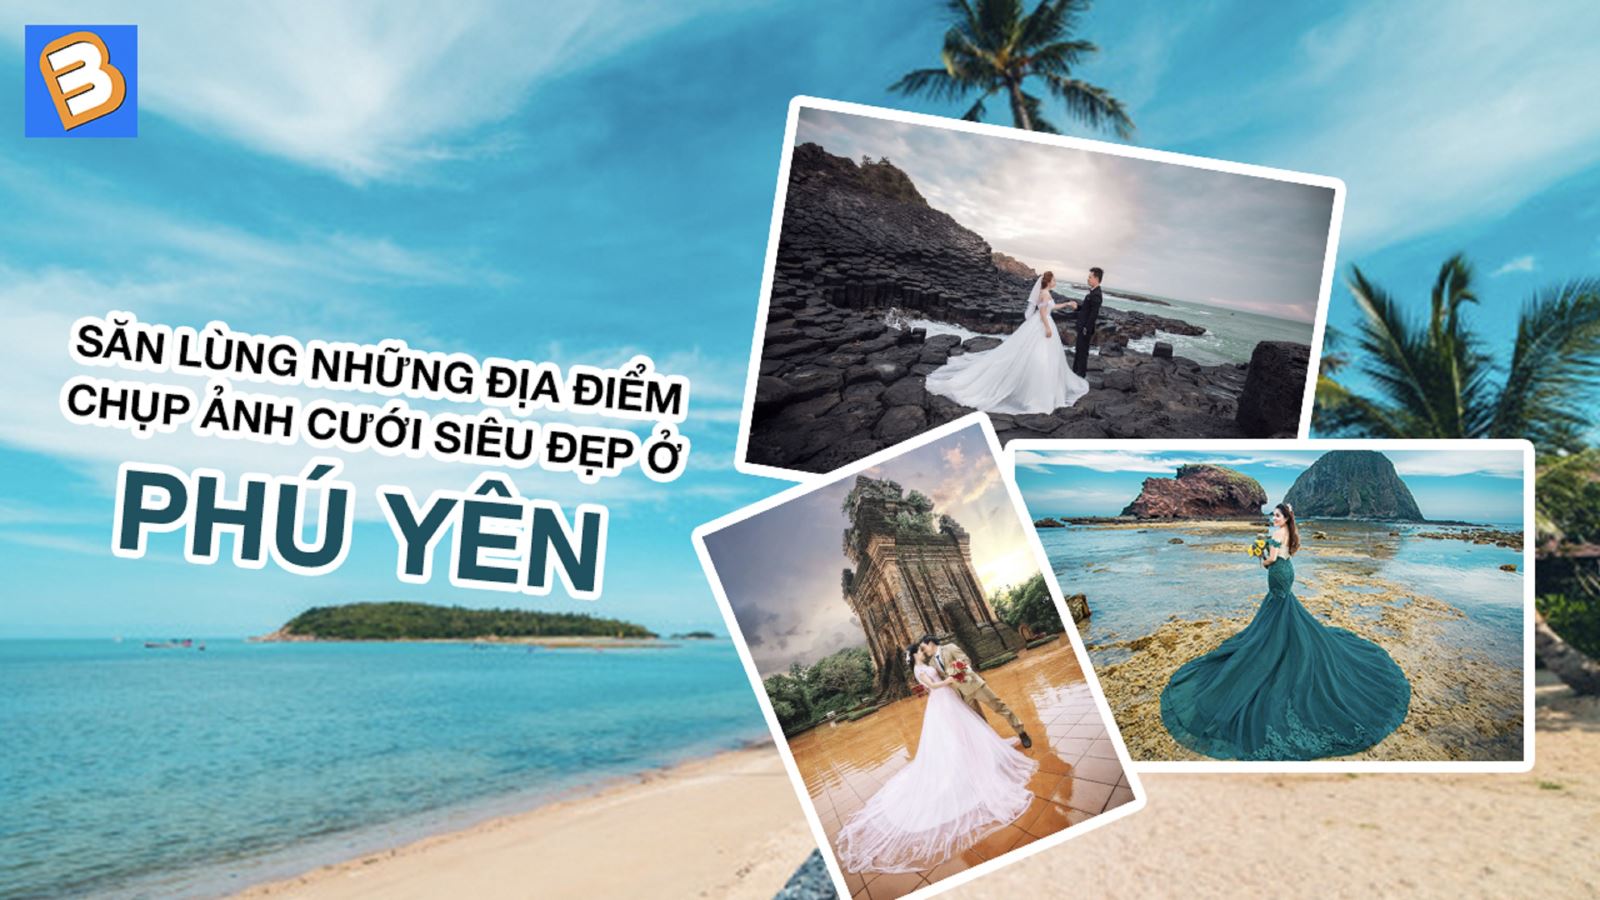 Địa điểm chụp ảnh cưới Phú Yên: Tại Phú Yên, chúng tôi có rất nhiều địa điểm chụp ảnh cưới đẹp và ấn tượng. Từ bãi biển cát trắng, núi non xanh ngát đến những con đường ven bờ biển thơ mộng, bạn sẽ tìm thấy không gian tuyệt vời để chụp những bức ảnh cưới đẹp nhất tại Phú Yên.